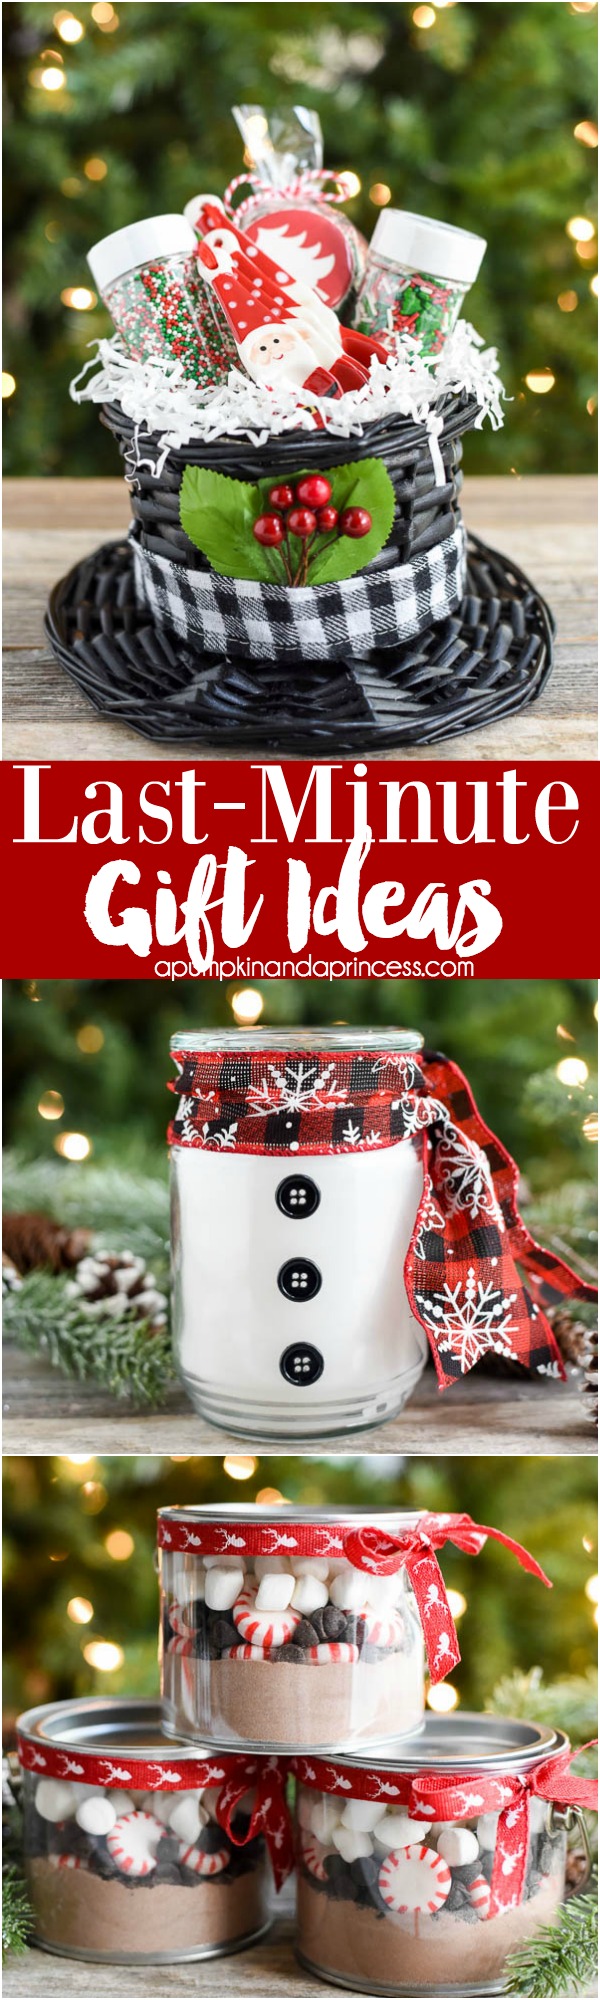 Last-Minute Handmade Gift Ideas